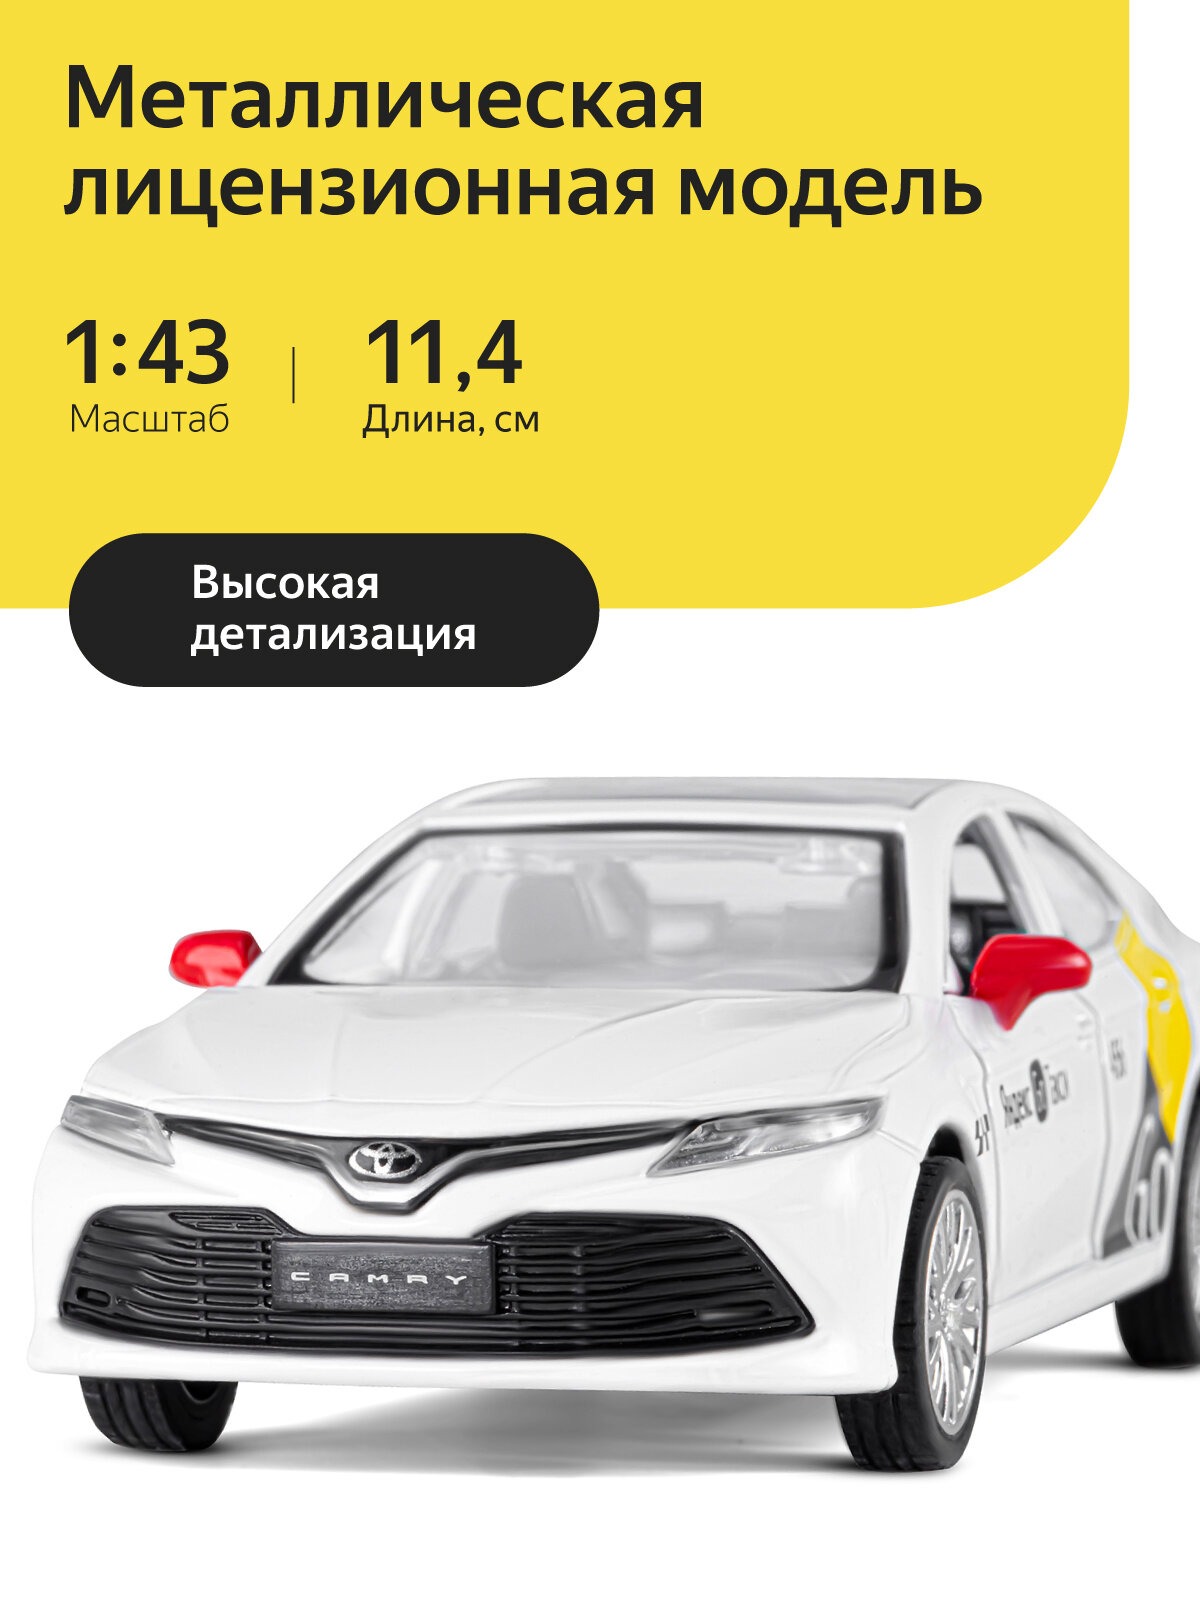 Машинка металлическая Яндекс GO 1:43 Toyota Camry озвучено Алисой цвет белый JB1251484 - фото 1